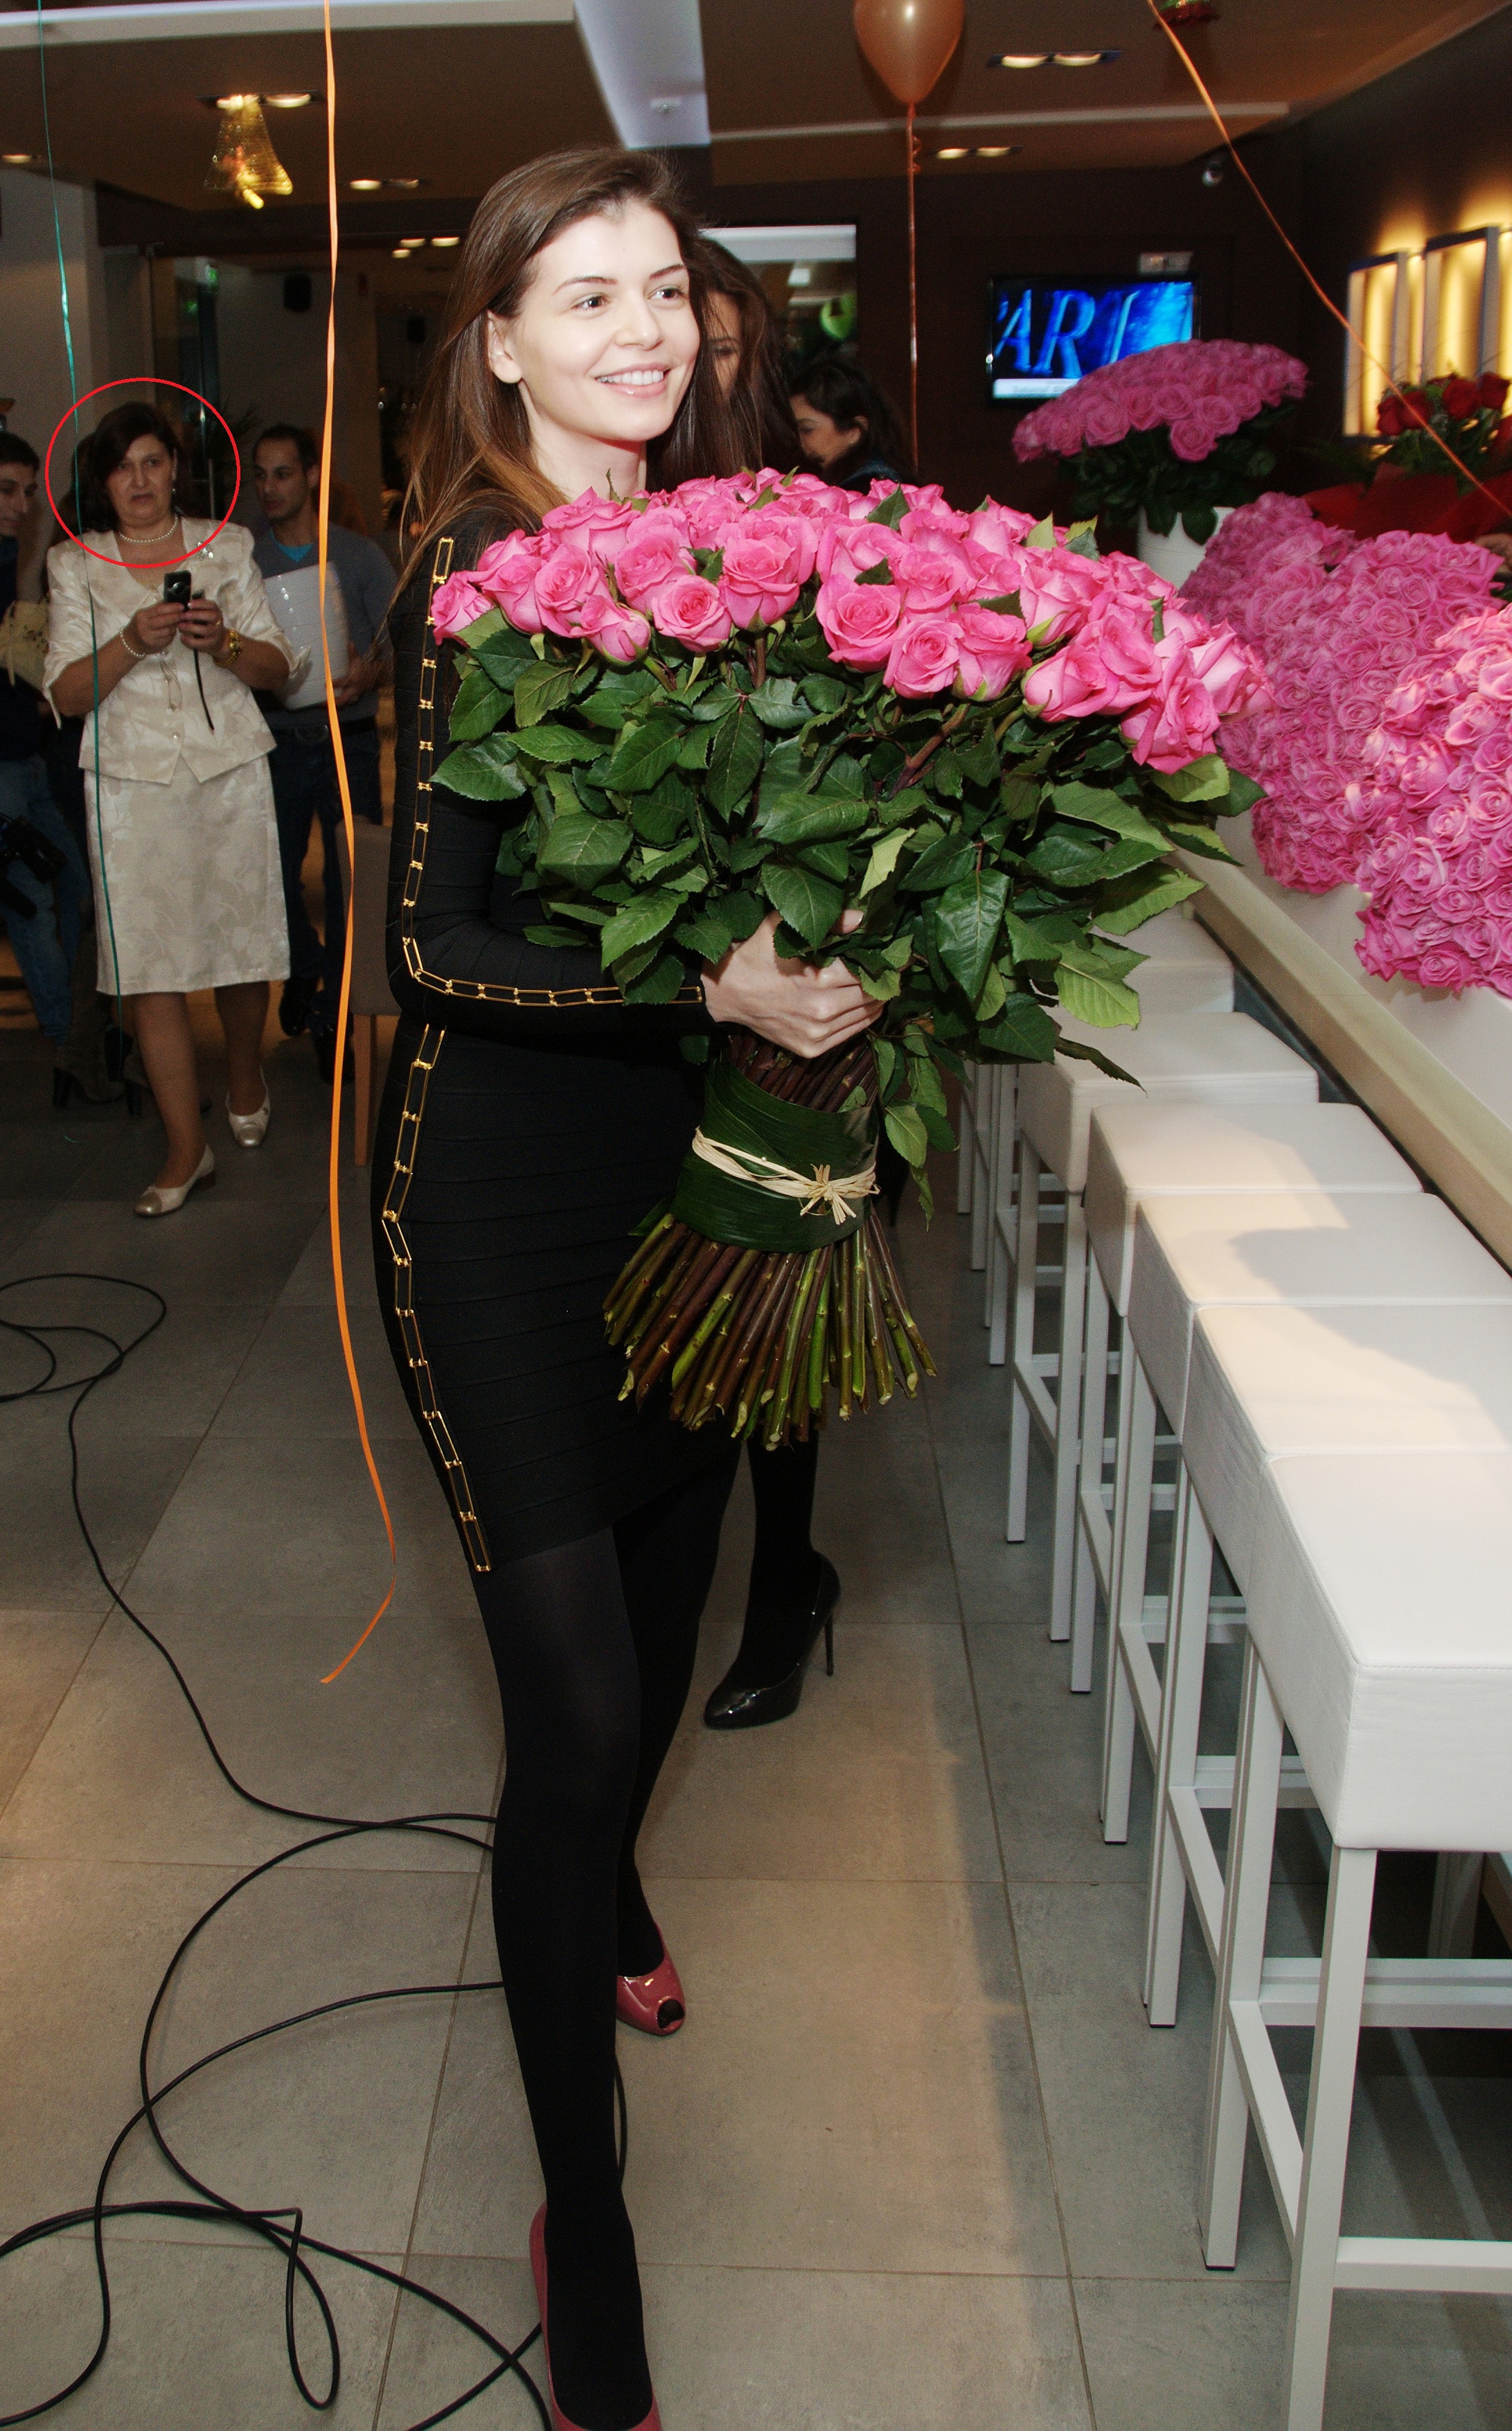 In urma cu un an, Monica Gabor se lauda ca Mr. Pink i-ar fi trimis 1000 de trandafiri la ziua fiicei sale